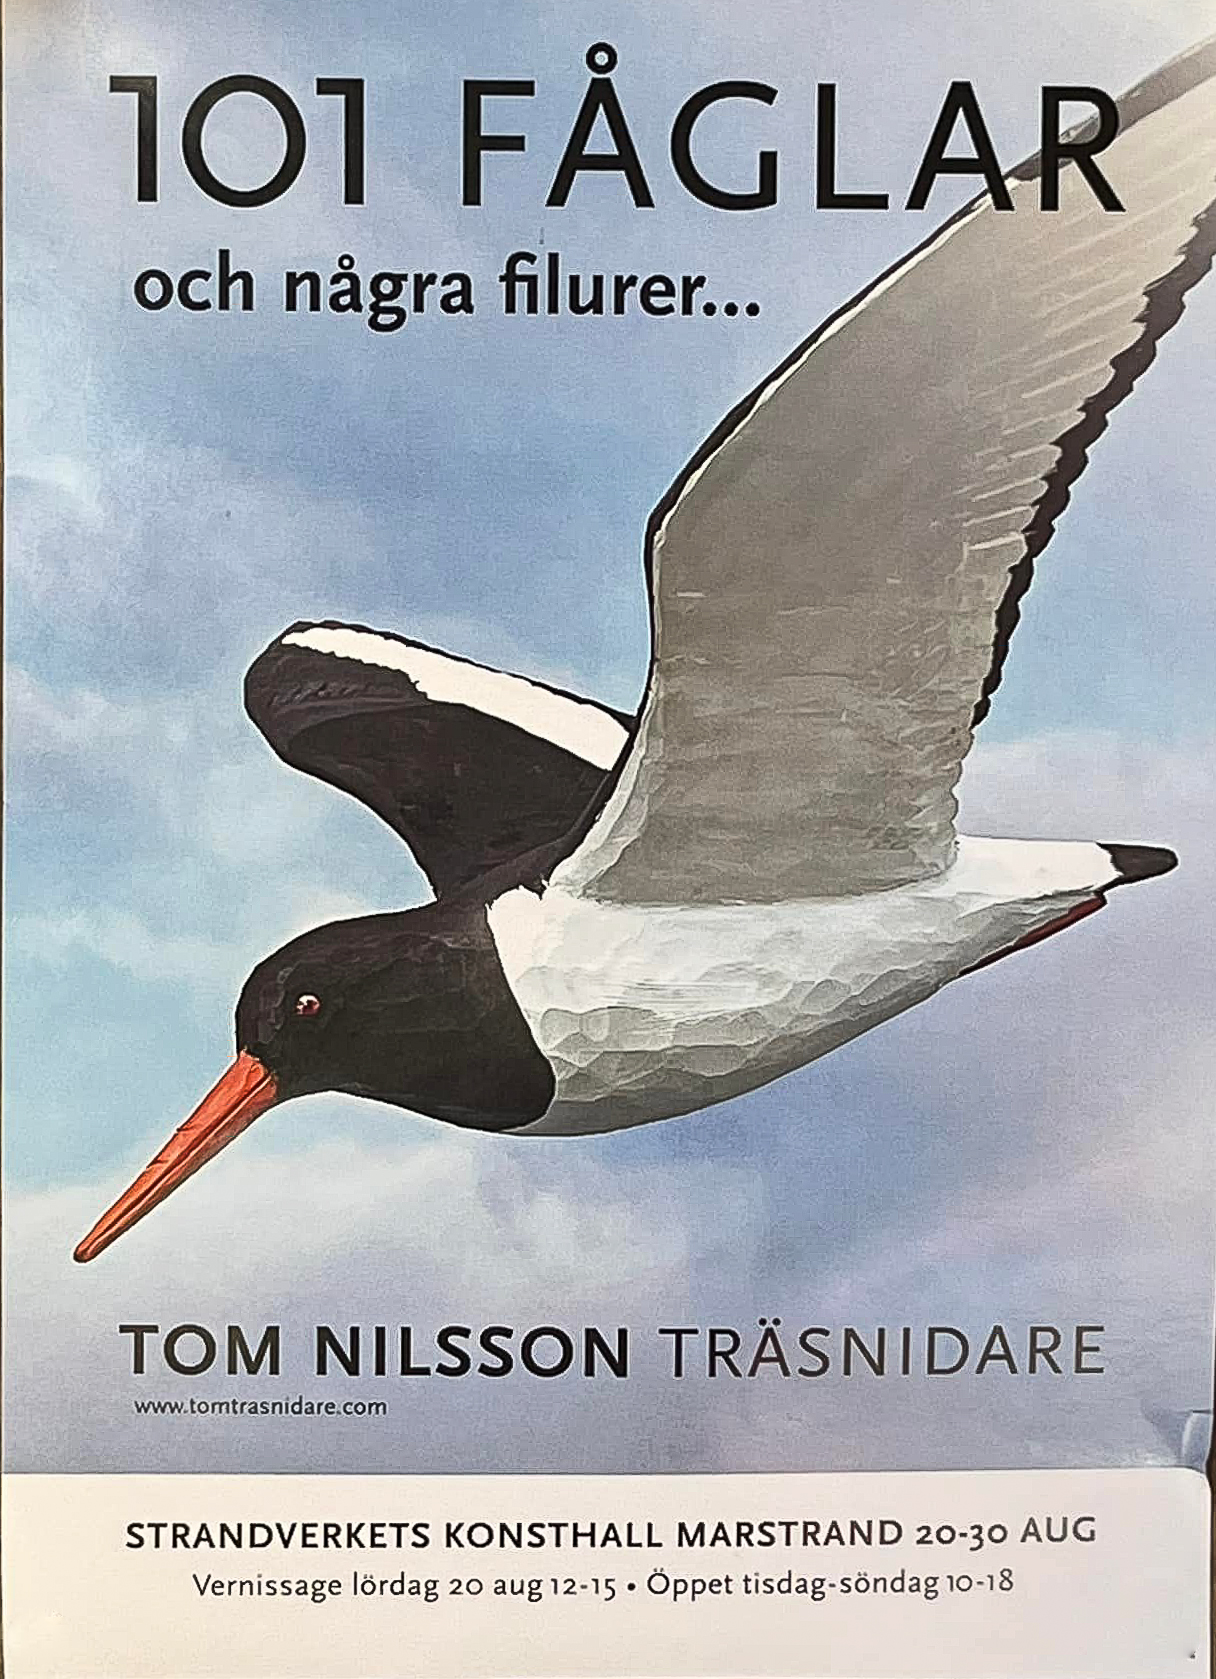 Tom Nilsson - 101 fglar och ngra filurerjpg